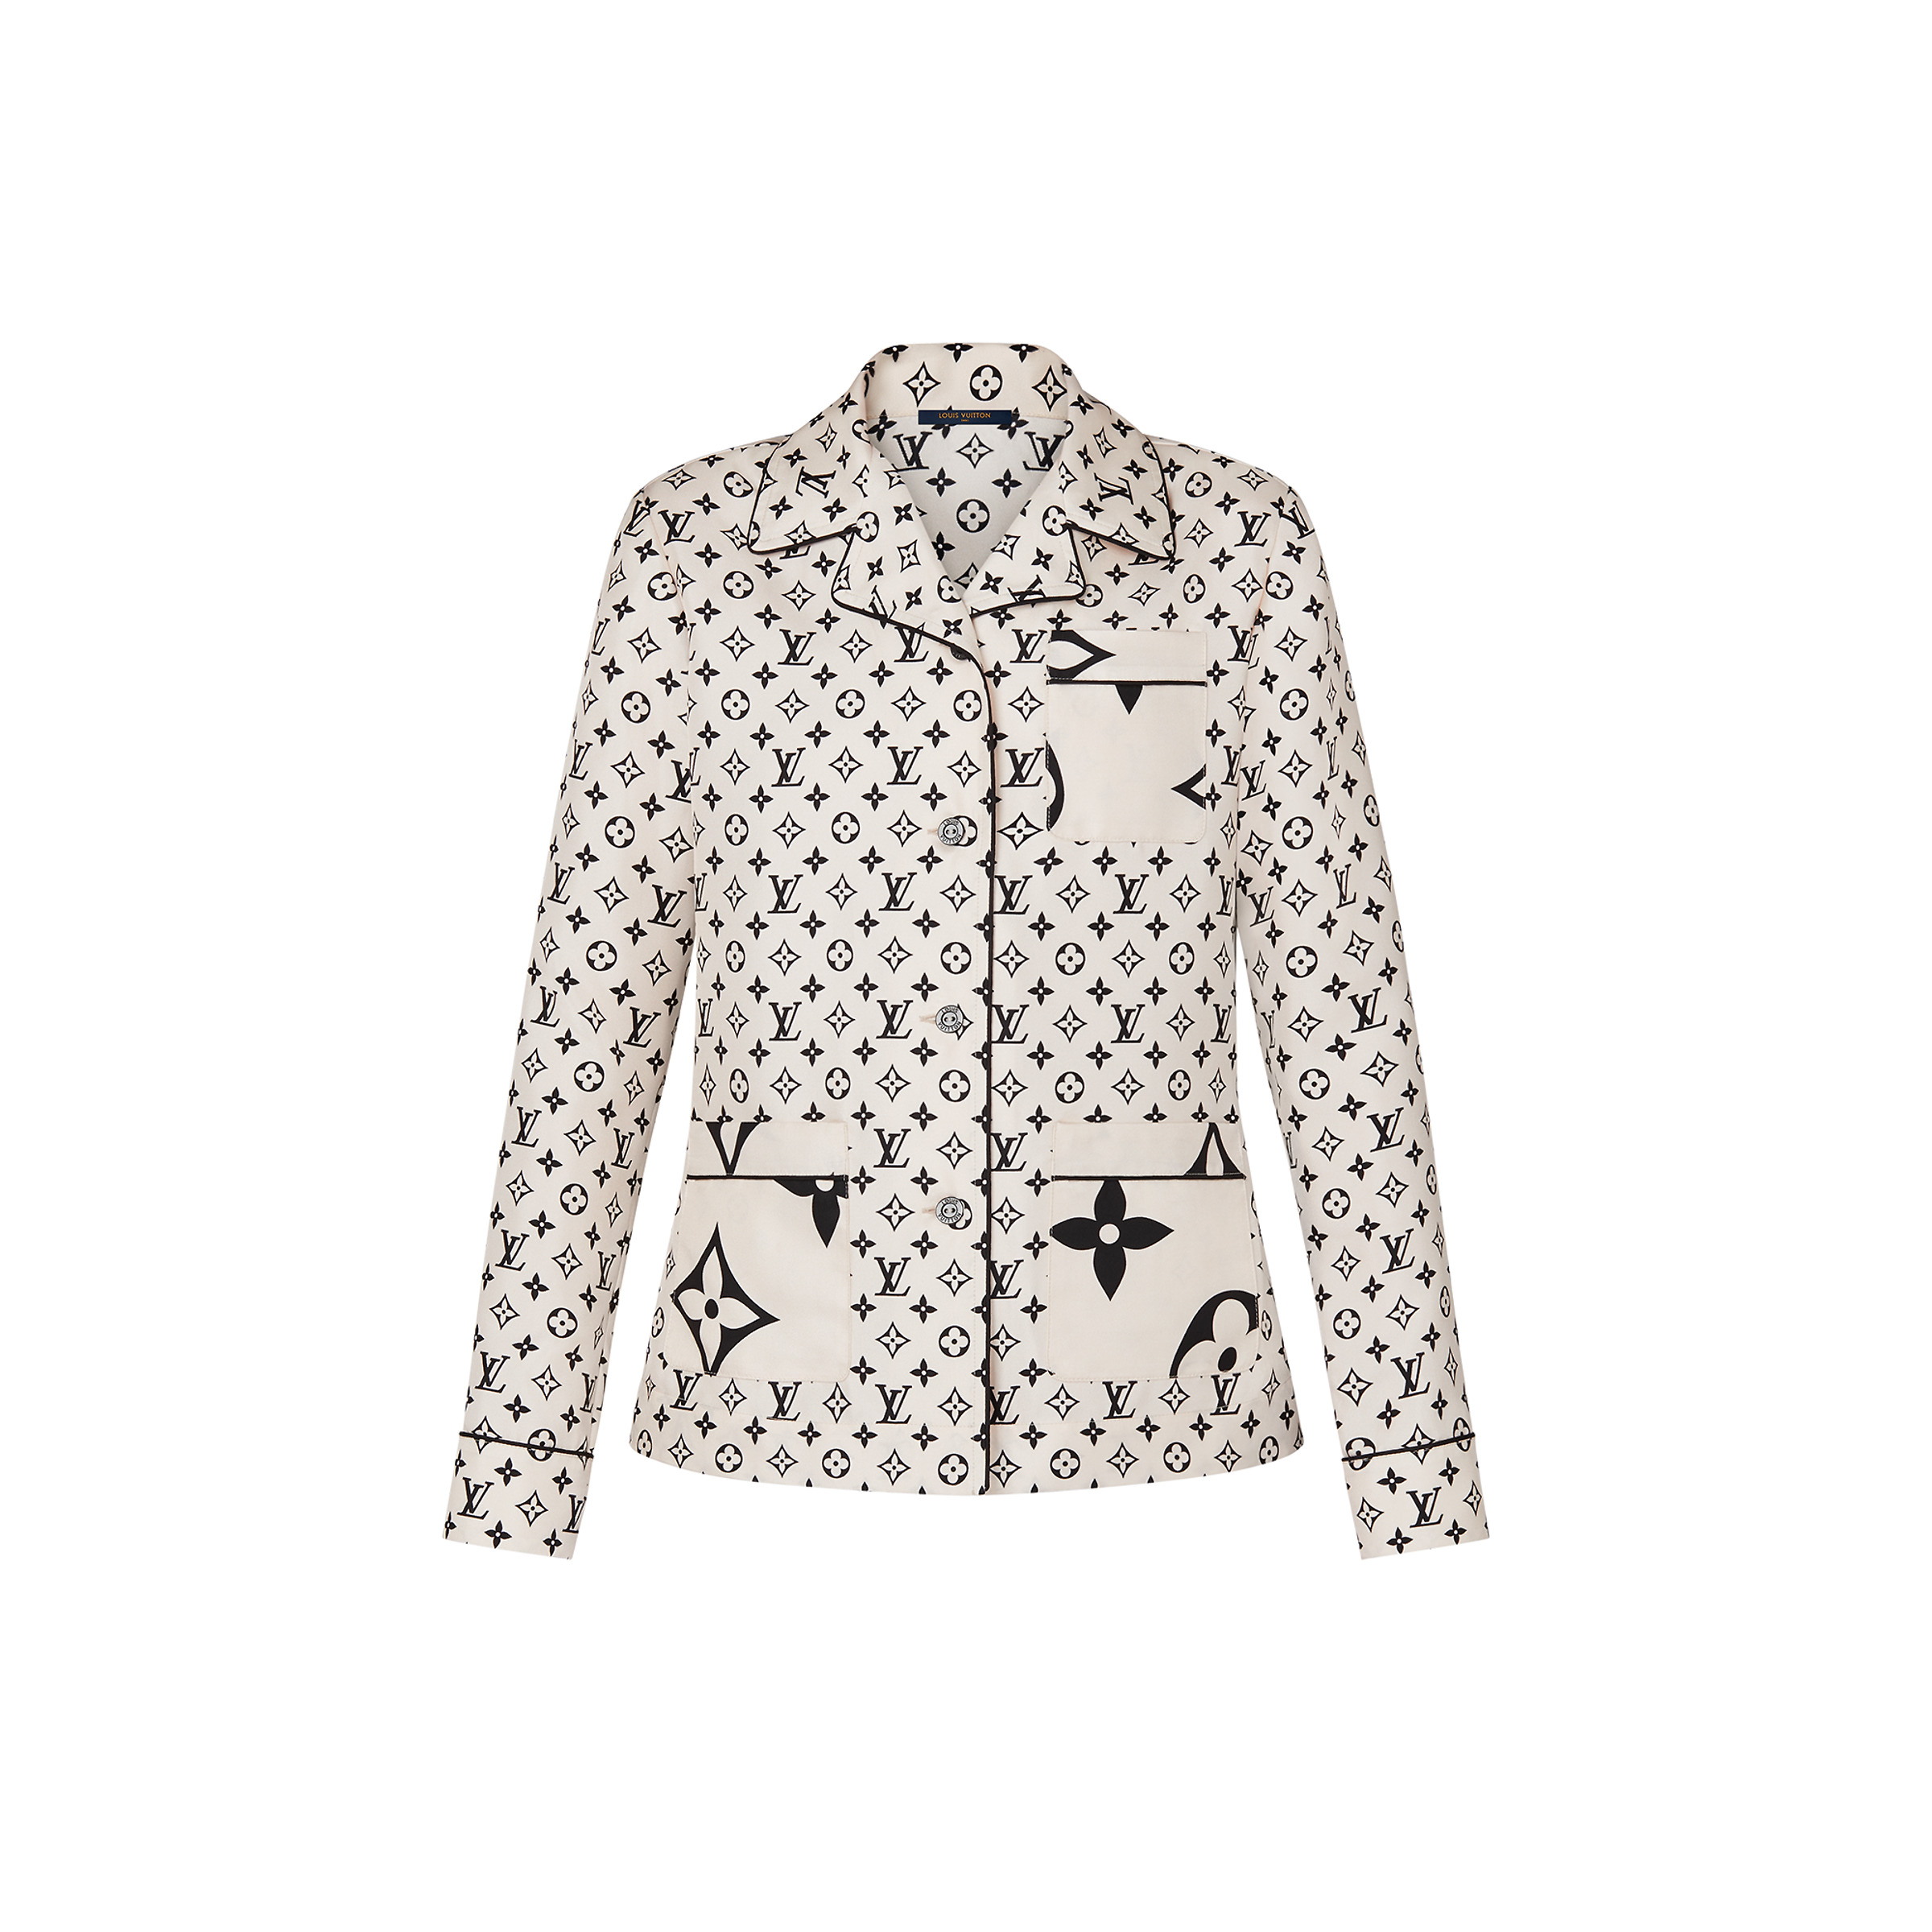 Jinkee Pacquiao's Louis Vuitton blazer is a winner